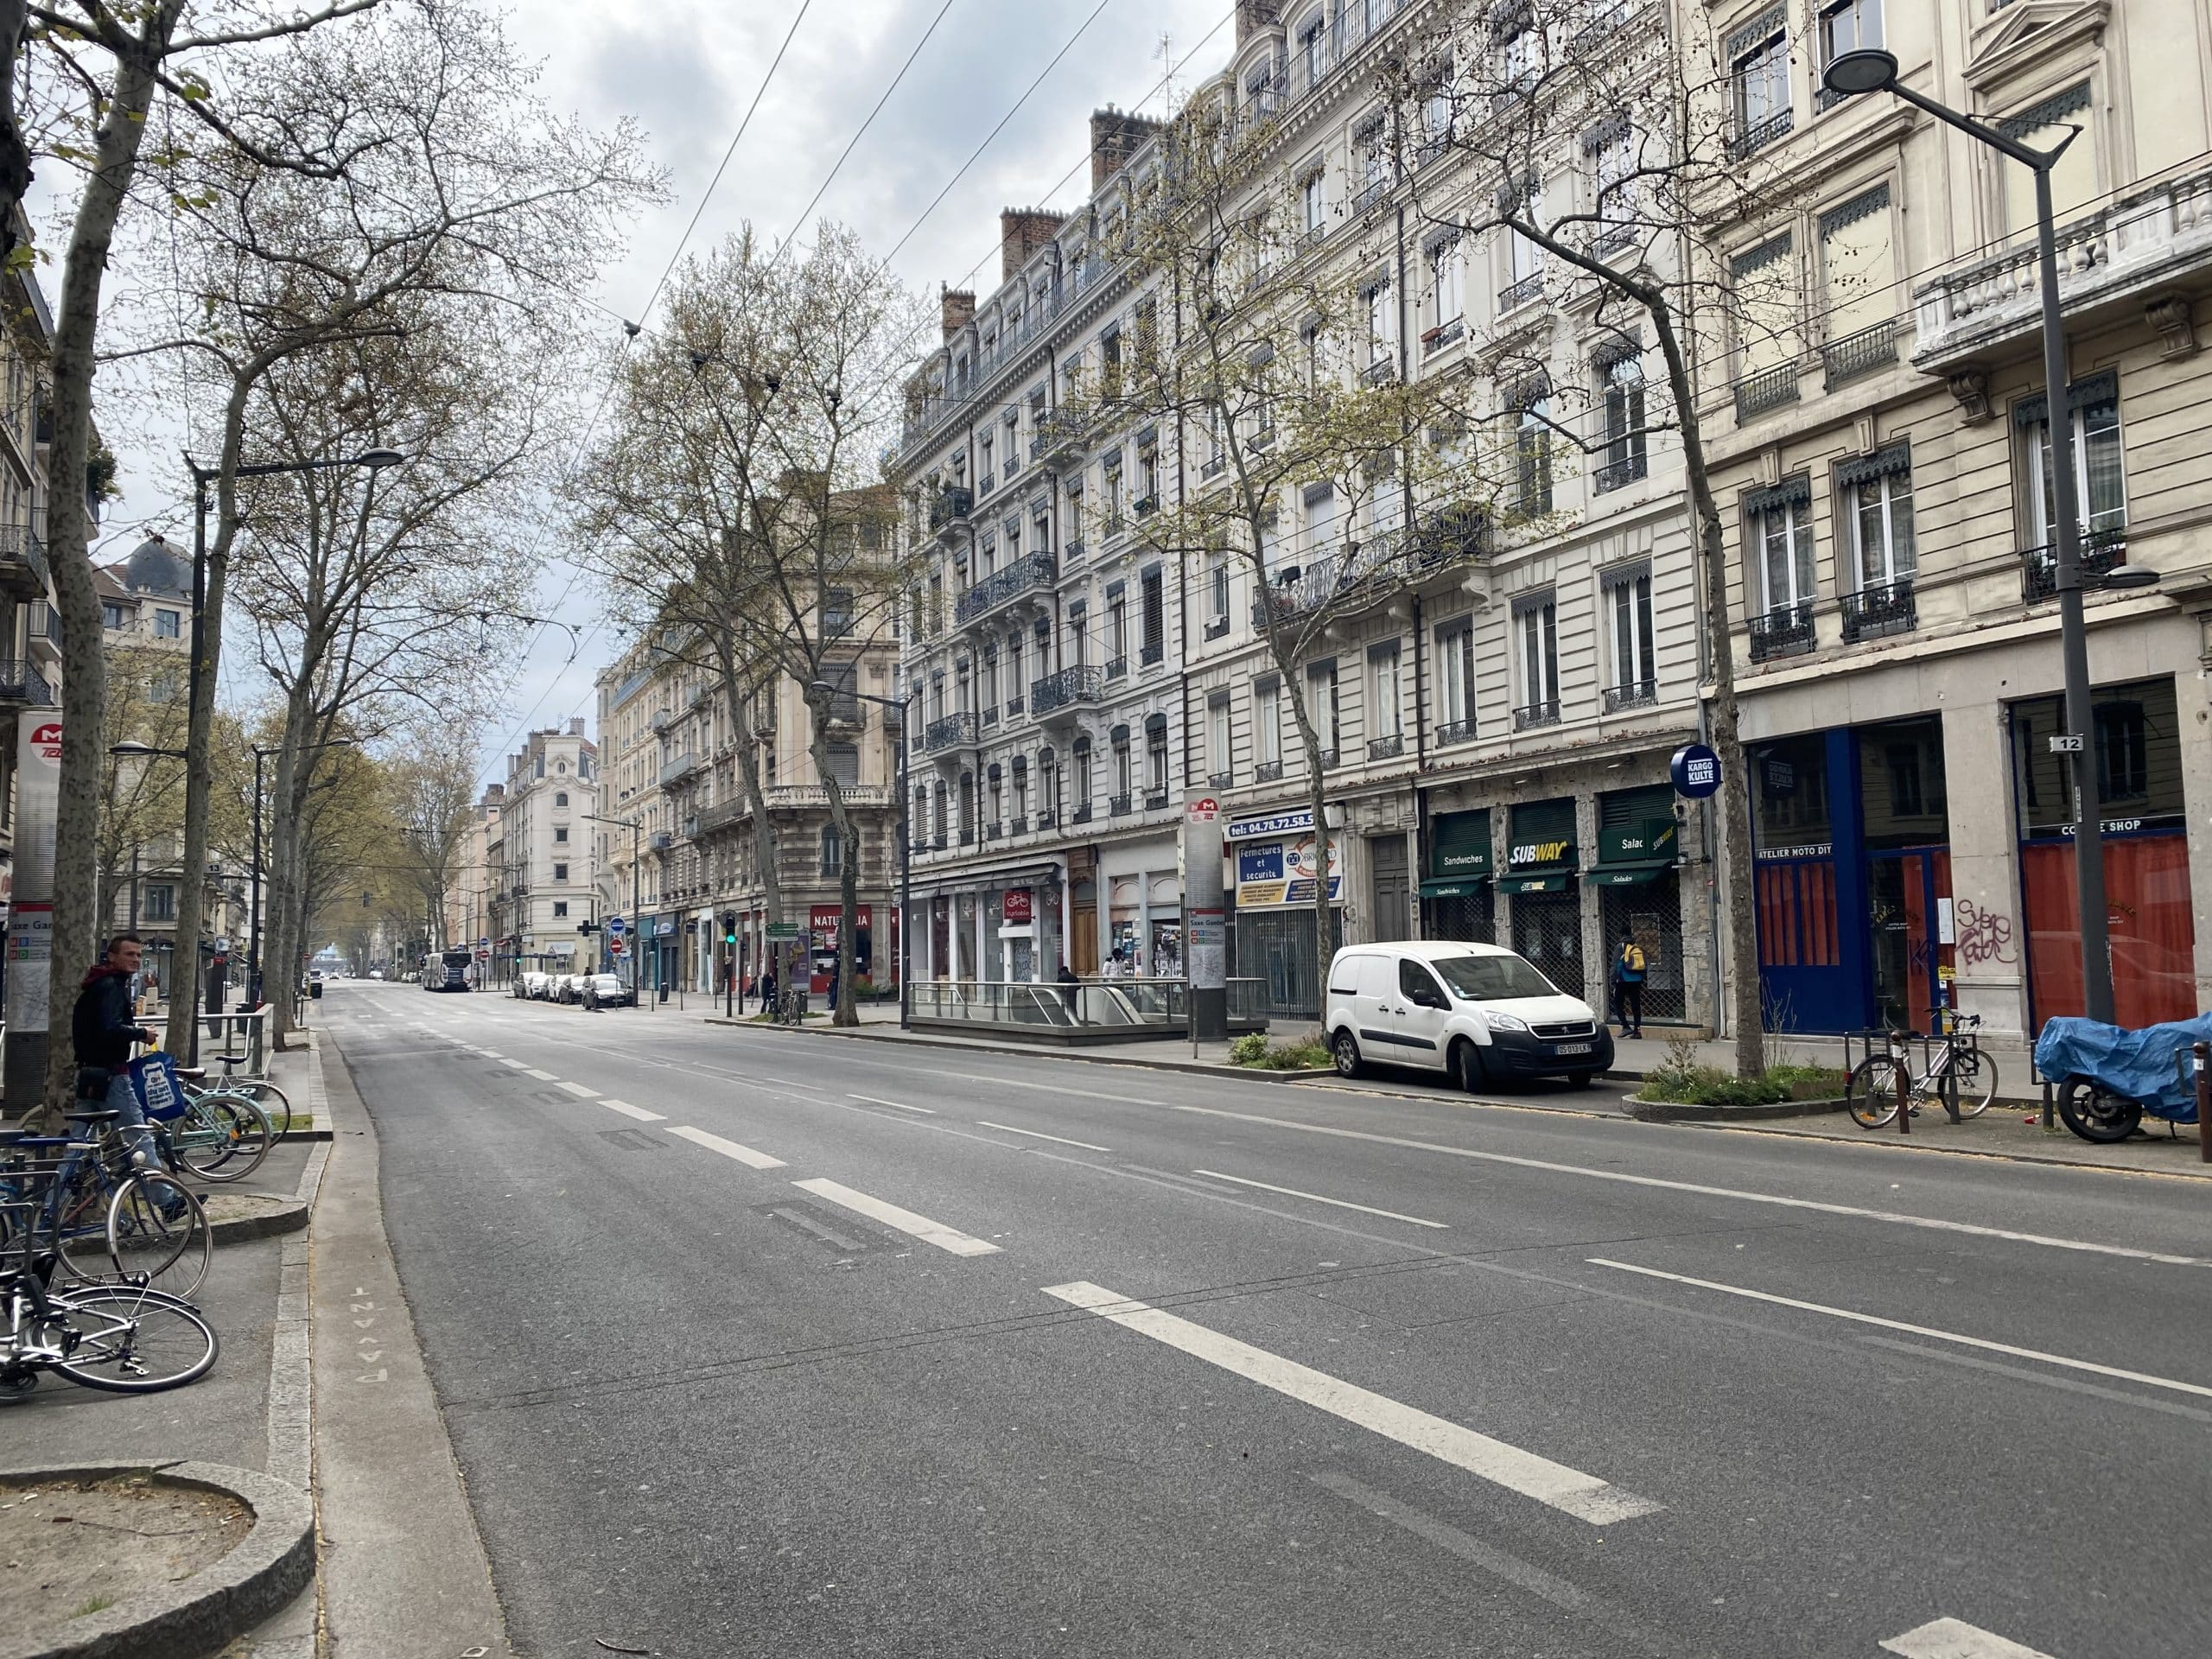 Désinfection ciblée du mobilier urbain à Lyon